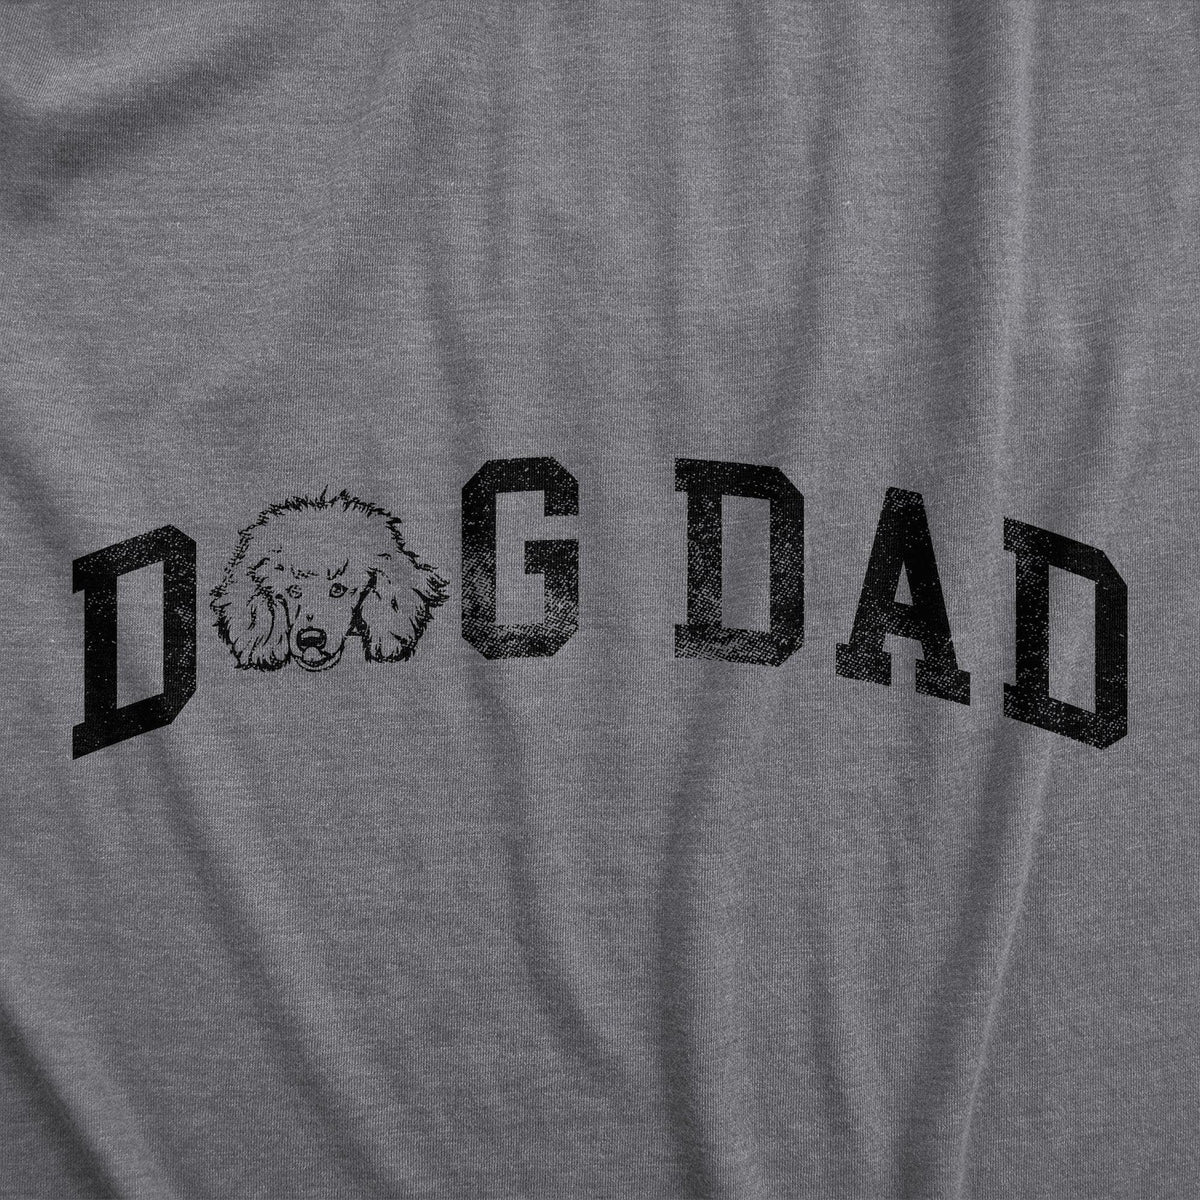 Dog Dad Poodle Men&#39;s Tshirt  -  Crazy Dog T-Shirts